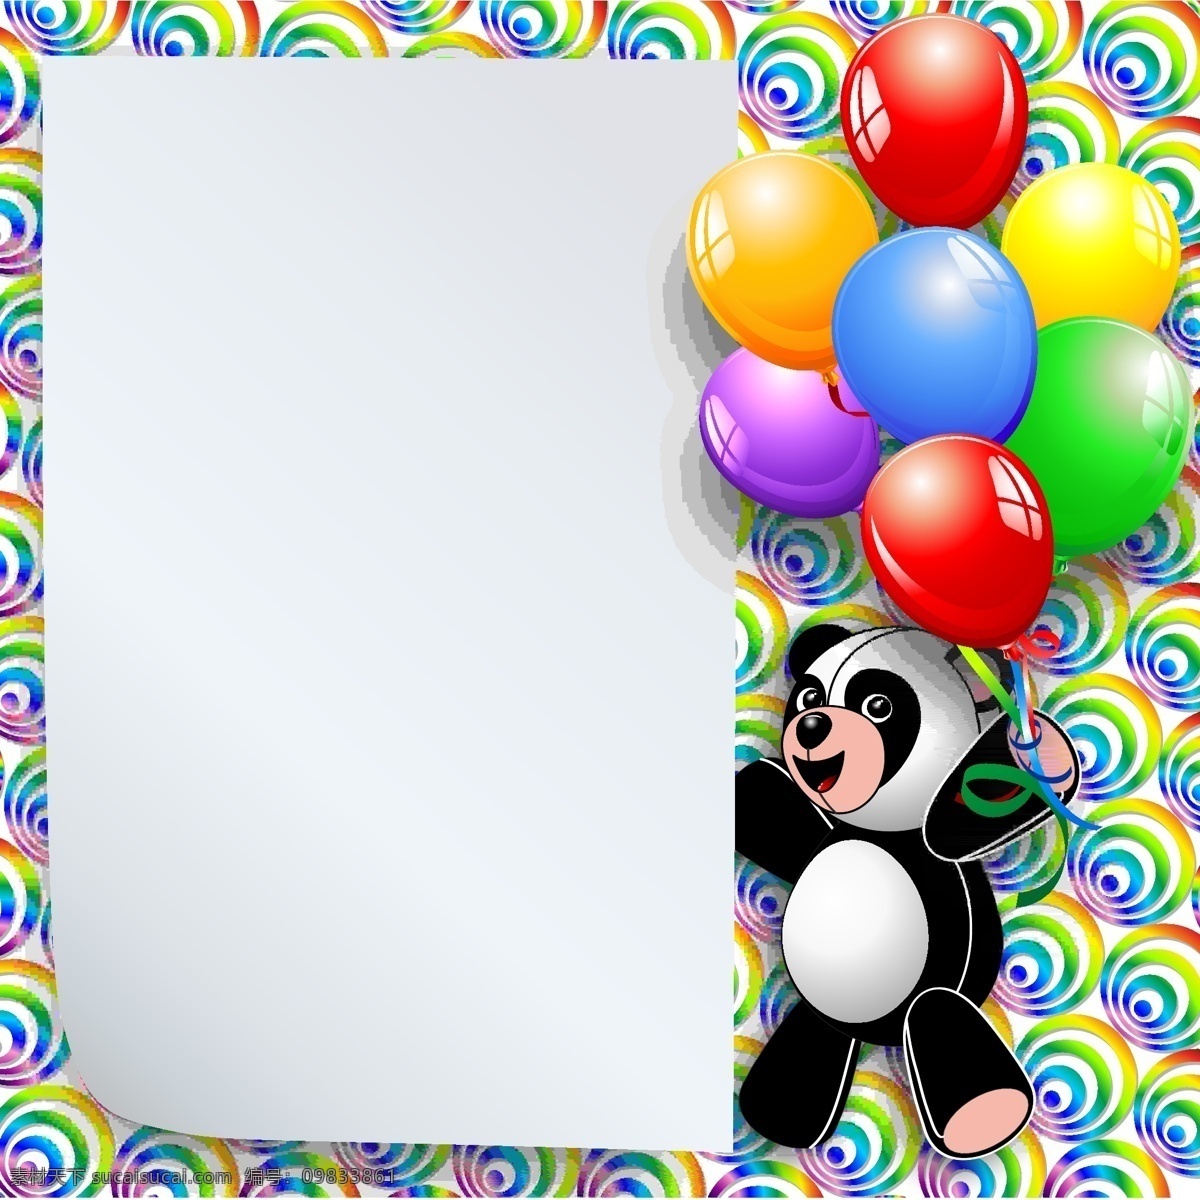 彩色气球 彩色 气球 模板下载 贺卡 横幅 节日庆祝 节日素材 卡片 生日背景素材 文化艺术 矢量 新年 条幅气球 装饰 海报 展板